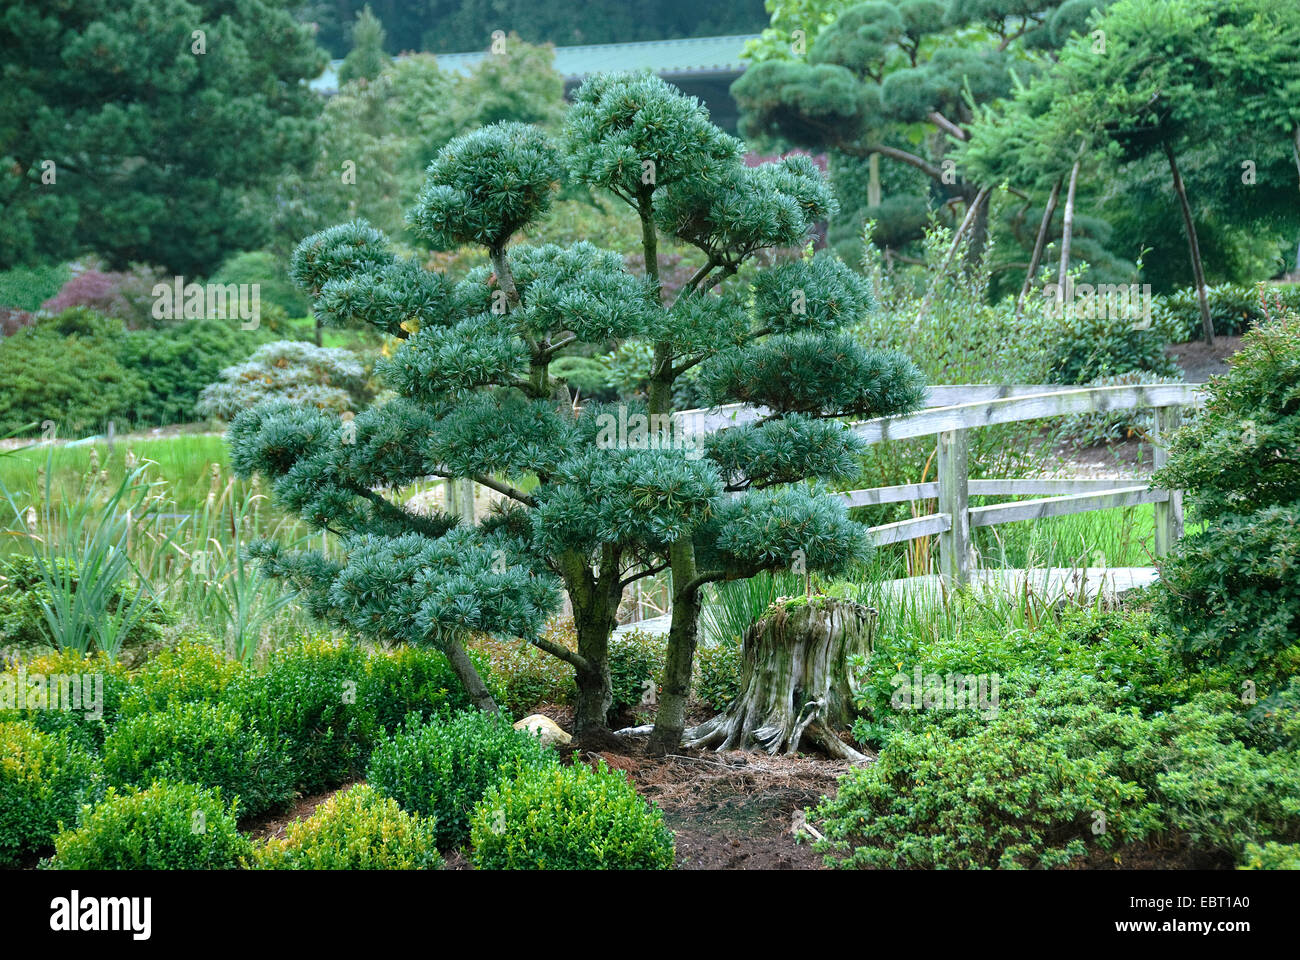 Japanese white pine (Pinus parviflora 'Glauca', Pinus parviflora Glauca), cultivar glauca as garden bonsai Stock Photo